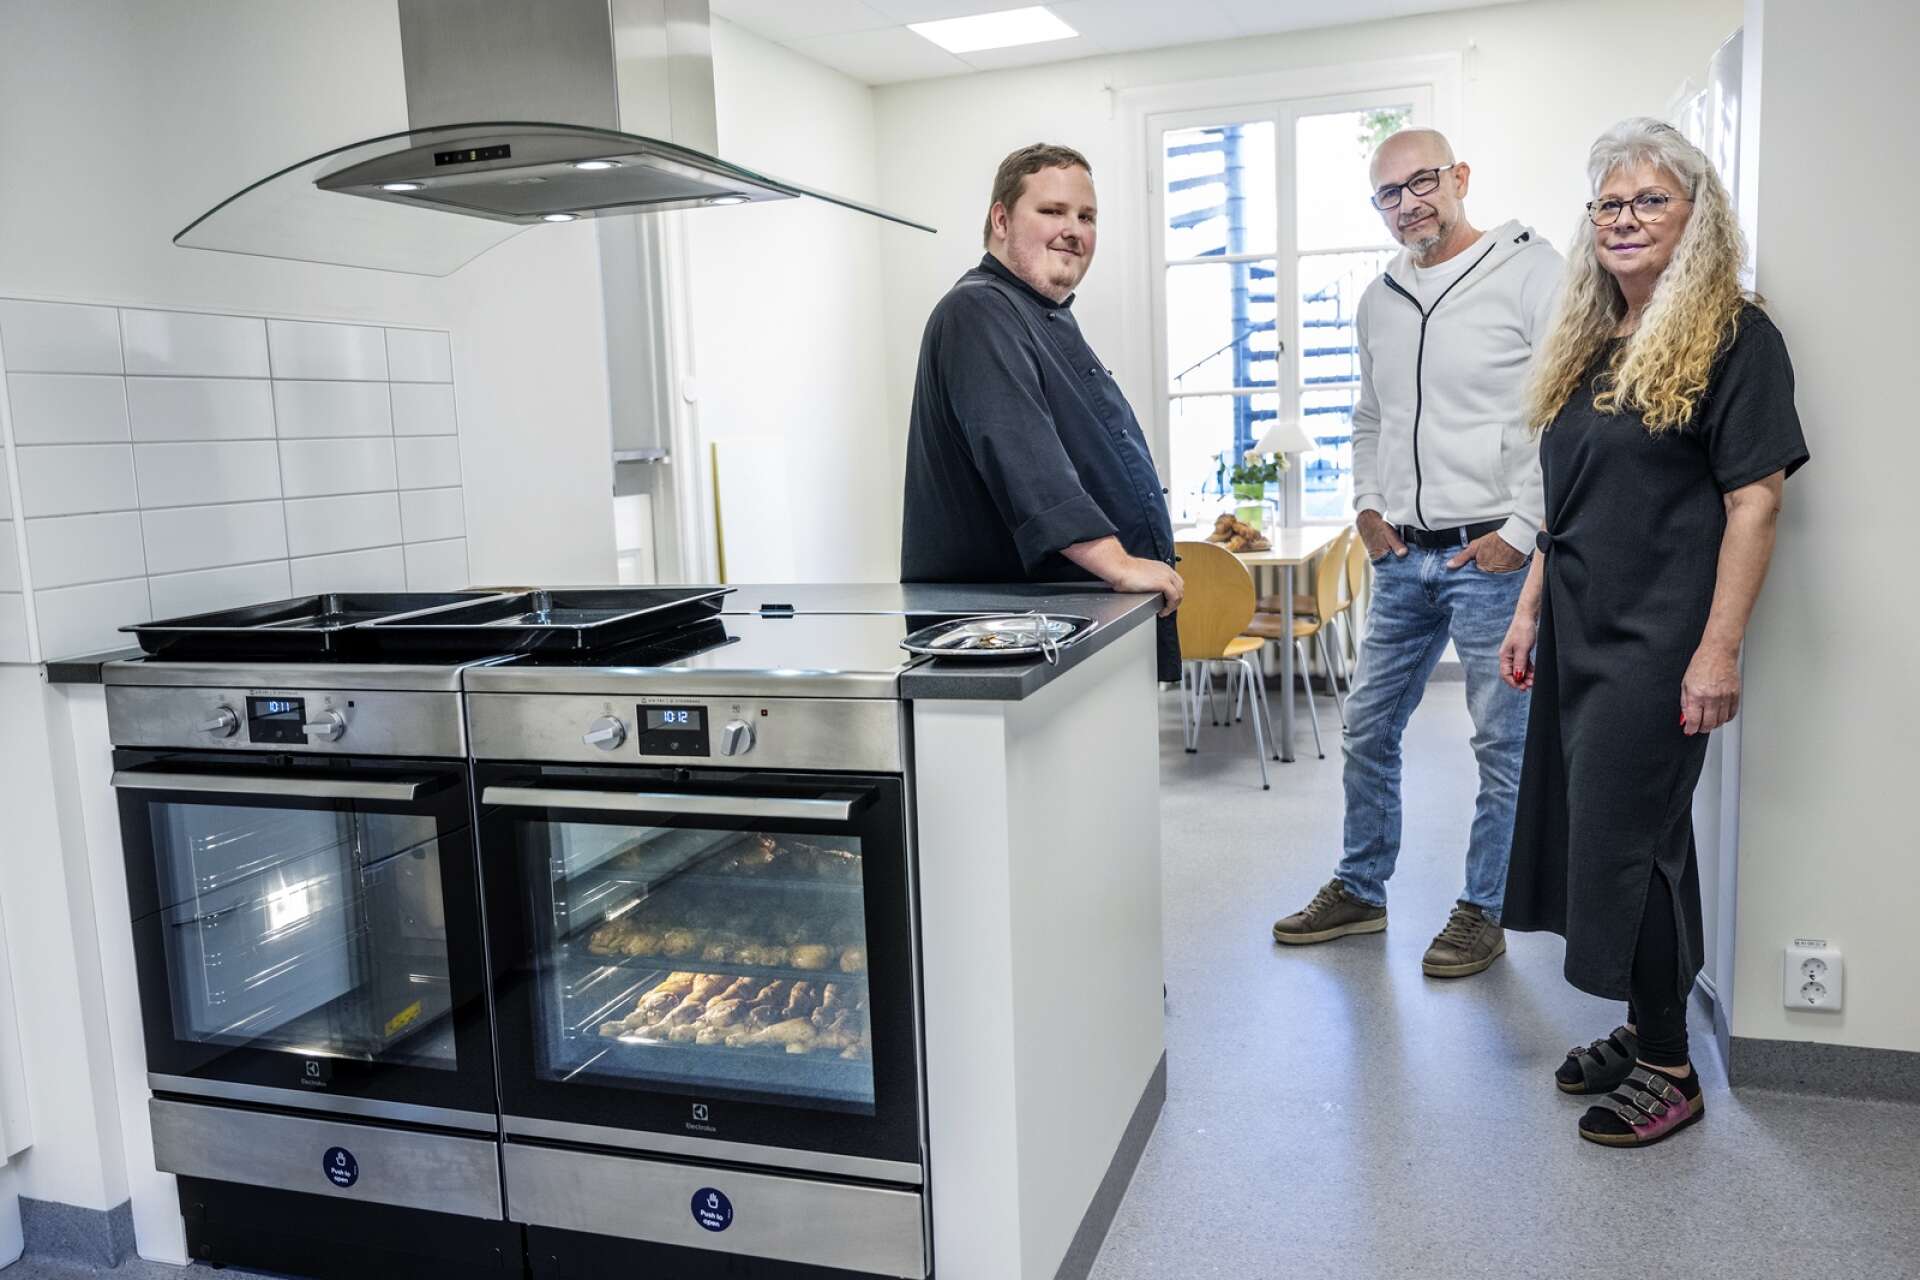 Ria i Karlstad har fått ett nytt kök, som invigdes under fredagen. Ett viktigt lyft för verksamheten enligt kocken Timmie Larsson, Tage Pettersson och behandlingsassistenten Ulla-Britt Påhlsson.